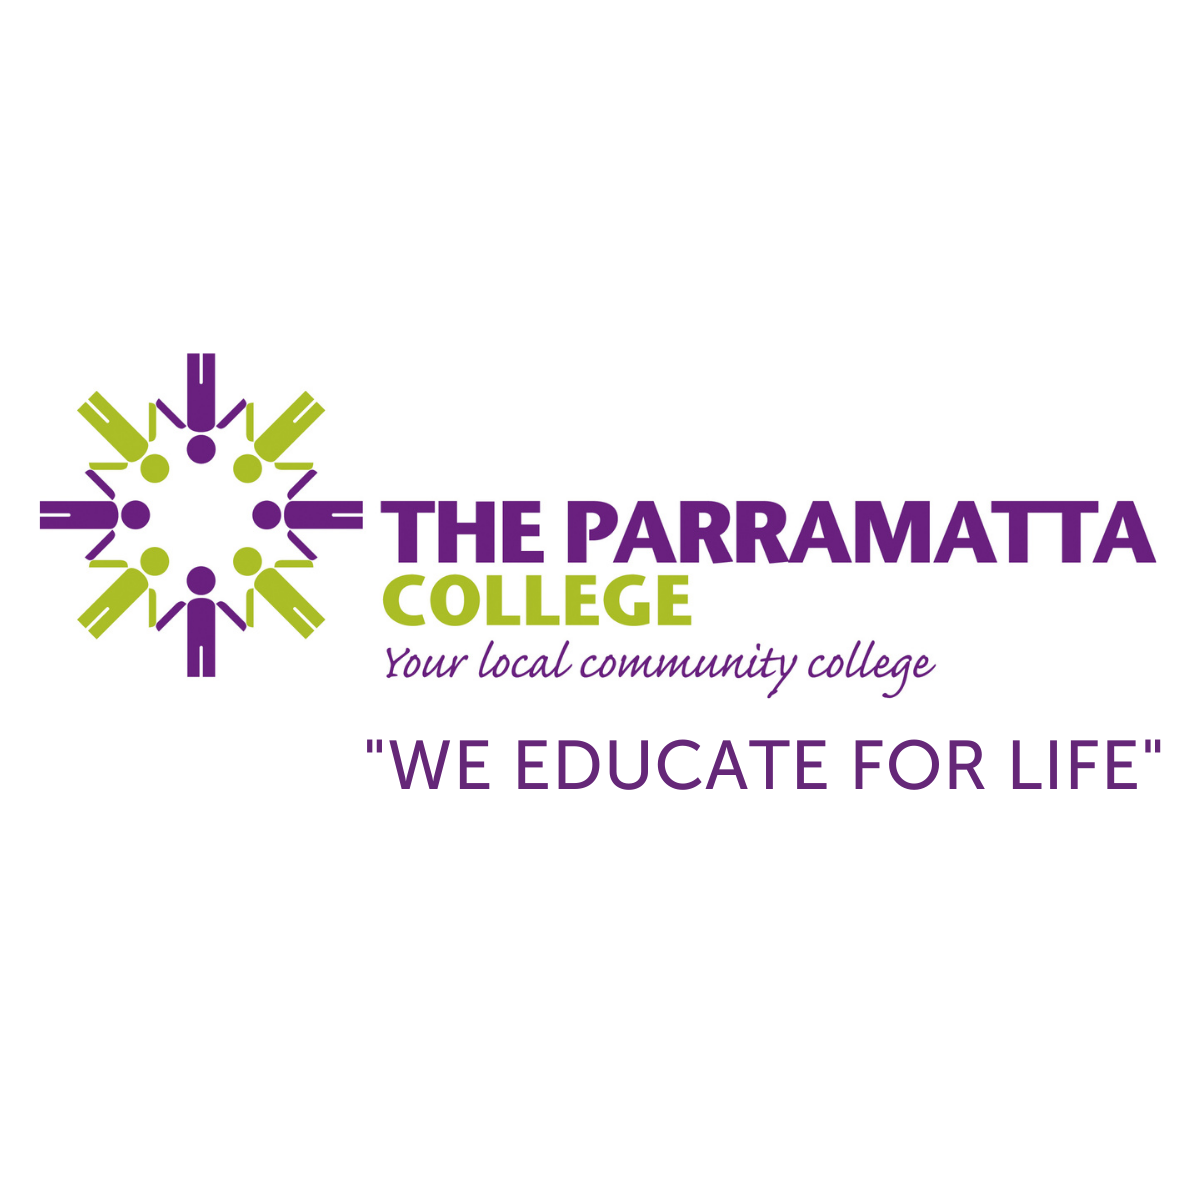 The Parramatta College